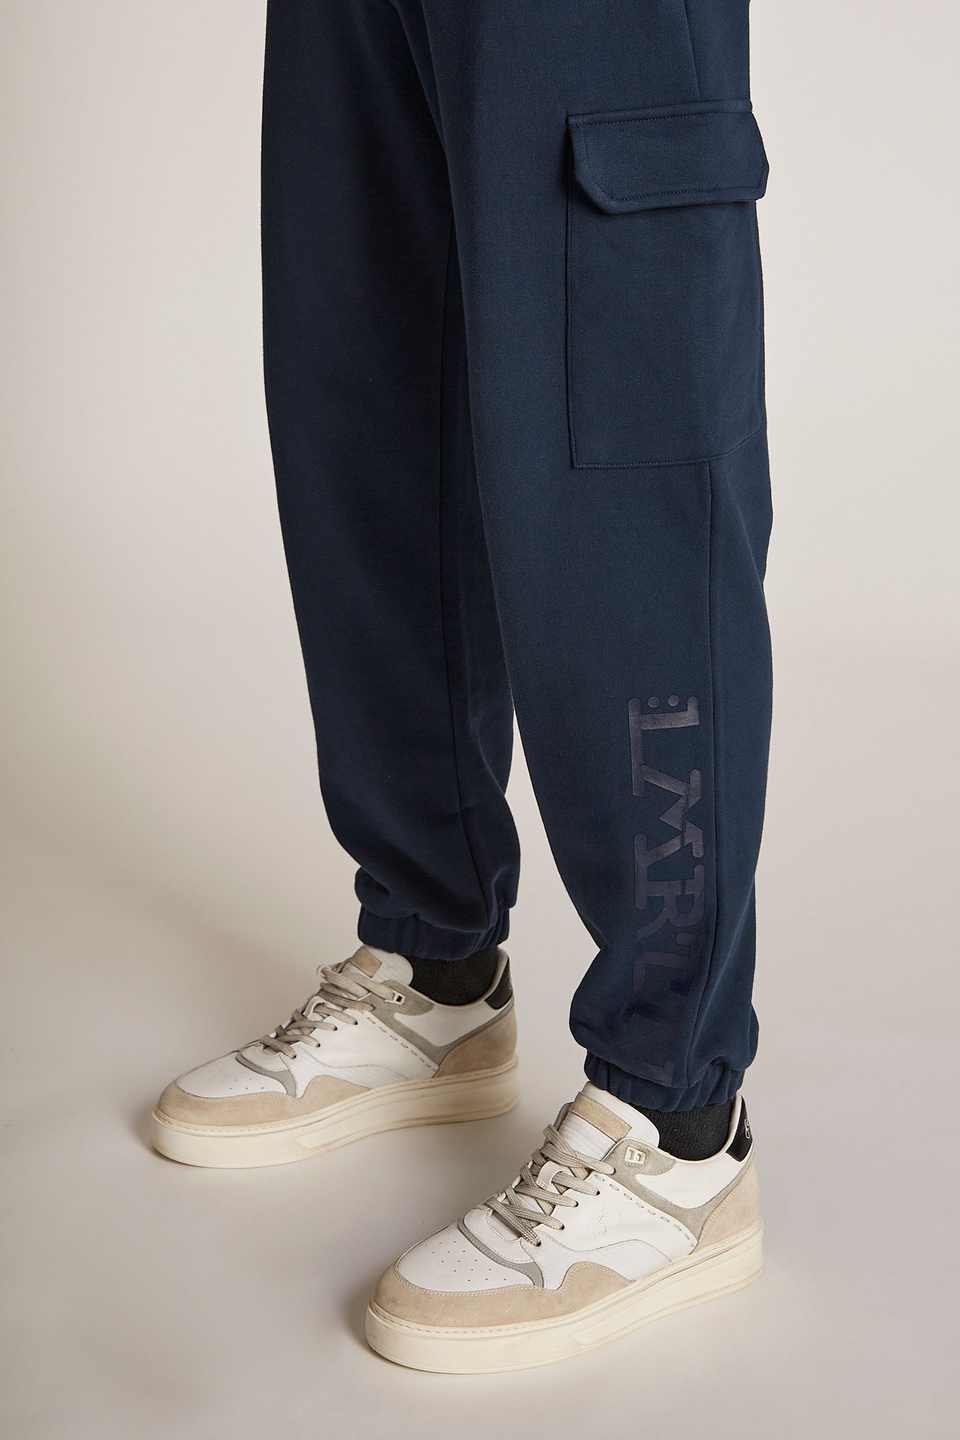 Pantalone da uomo in cotone modello jogger over - La Martina - Official Online Shop